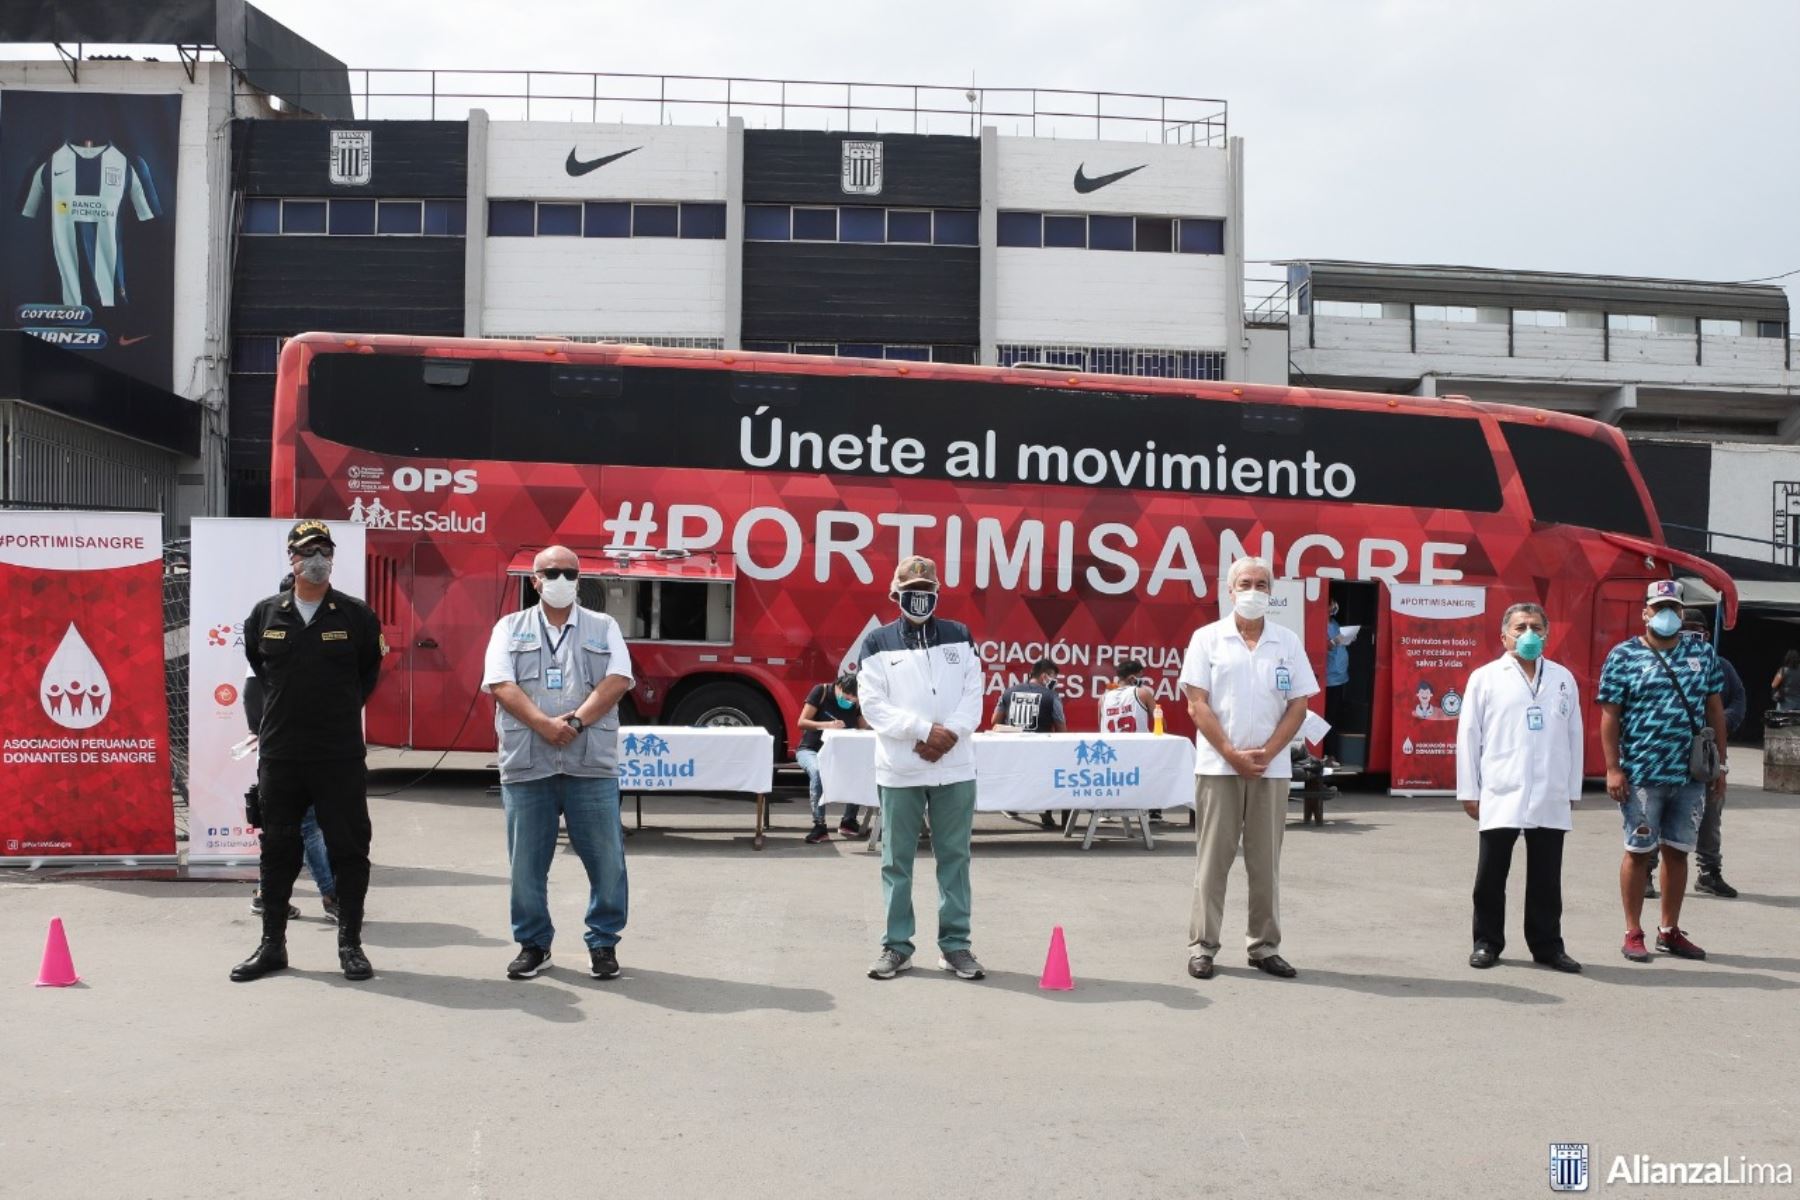 El Club Alianza Lima cedió la explanada del estadio Alejandro Villanueva para una campaña de donación de sangre dirigida a evitar el desabastecimiento de este insumo vital en tiempos de inmovilización social.